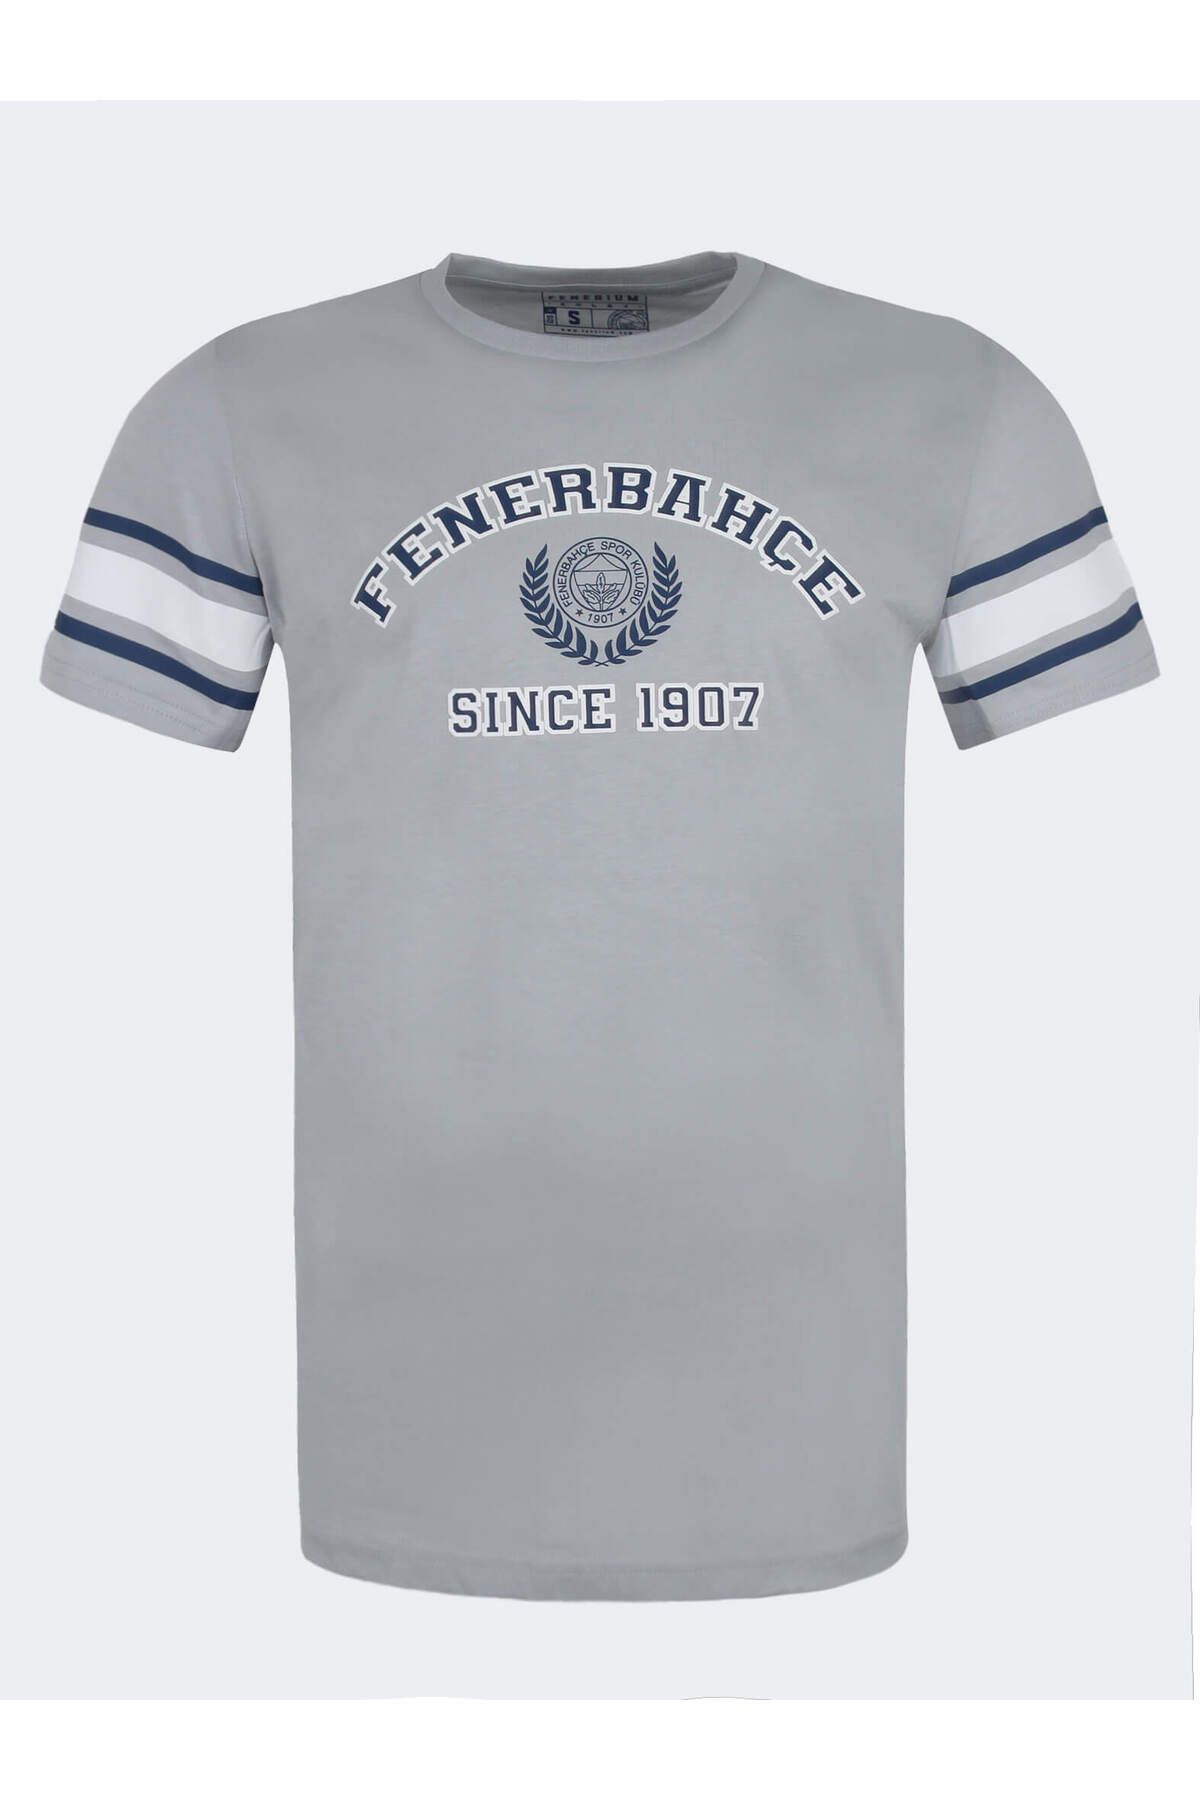 Fenerbahçe ERKEK KOLEJ FENERBAHÇE SİNCE 1907 TSH